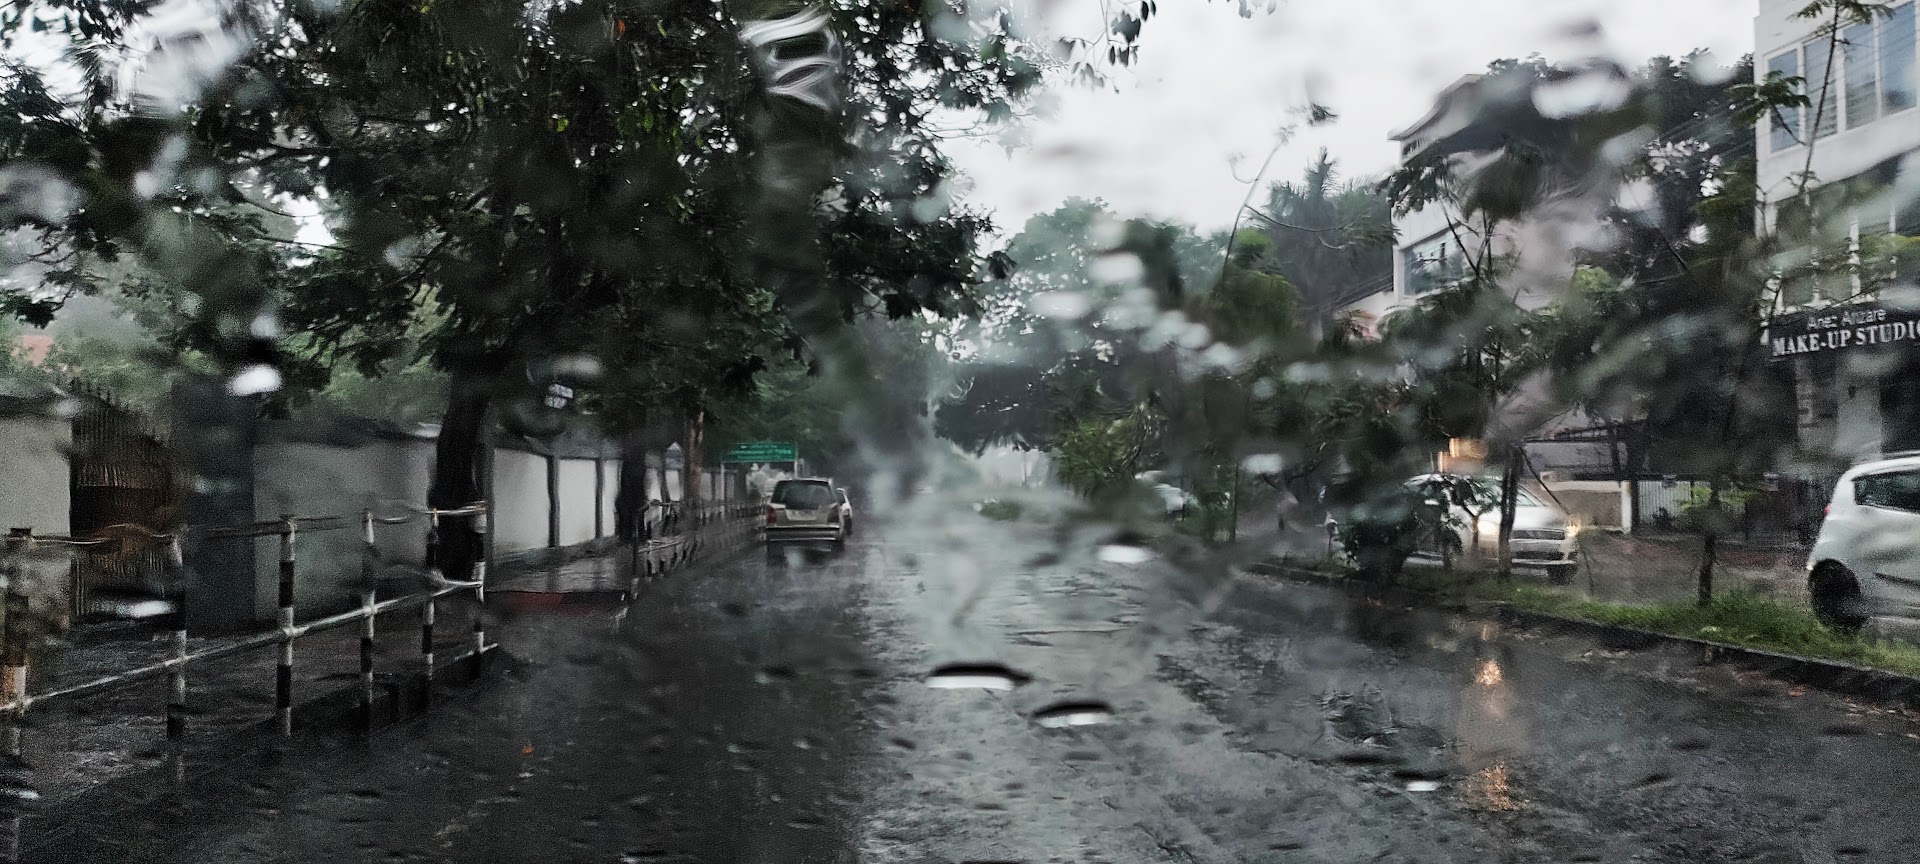 Heavy rains lashed Kerala capital Thiruvananthapuram on 6 September. (KA Shaji)